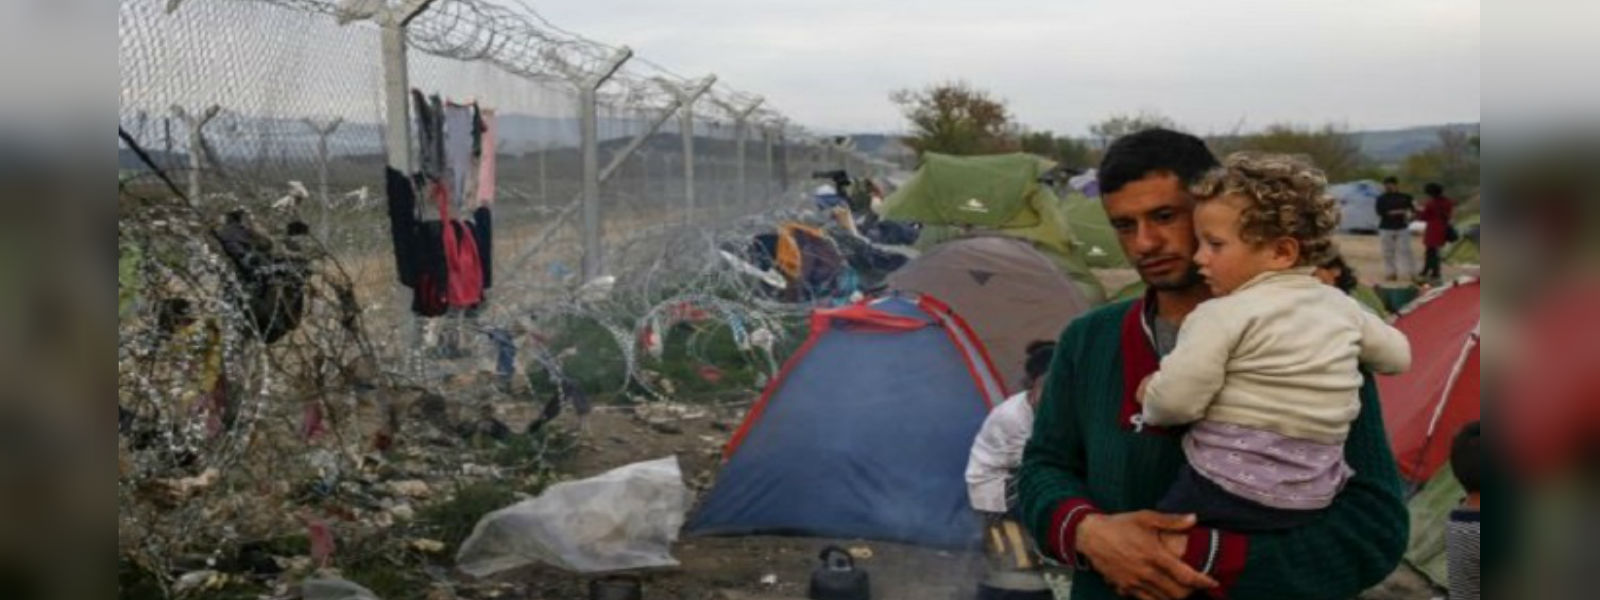 Refugees overcrowd Samos